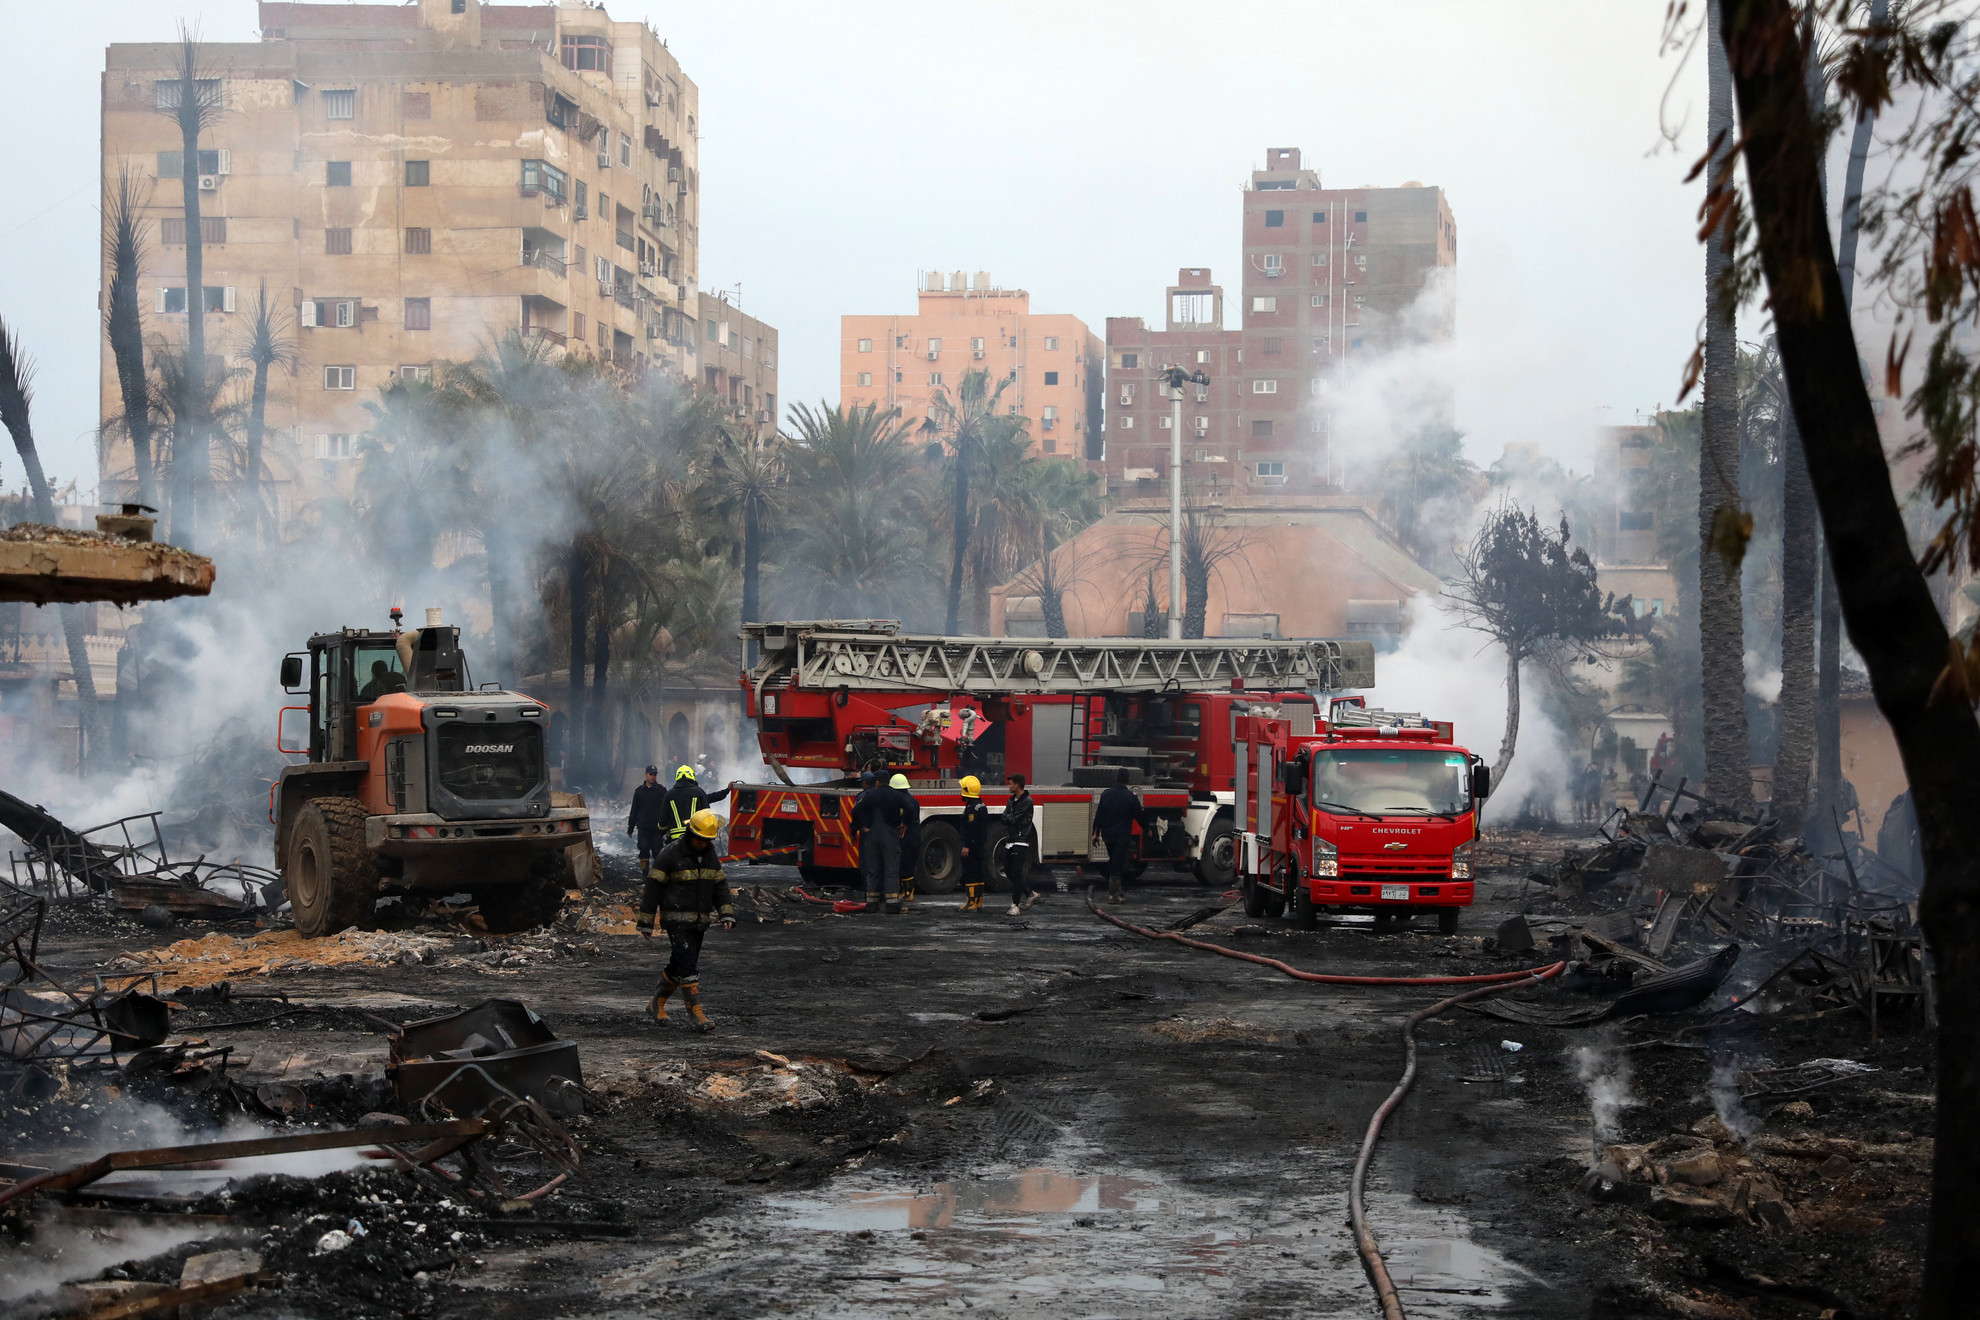 Tűzoltók hűtik a még mindig parázsló területet az Al-Ahram stúdióban és a környező épületekben keletkezett tűz után Kairó Gízai kerületében 2024. március 16-án. A lángok elborították az arab világ egyik legrégebbi és legrangosabb, 80 évvel ezelőtt alapított filmgyártó stúdióját, mindent felégettek benne, és átterjedtek három környező épületre, amelyeket evakuáltak, mielőtt a tűz elérte volna őket